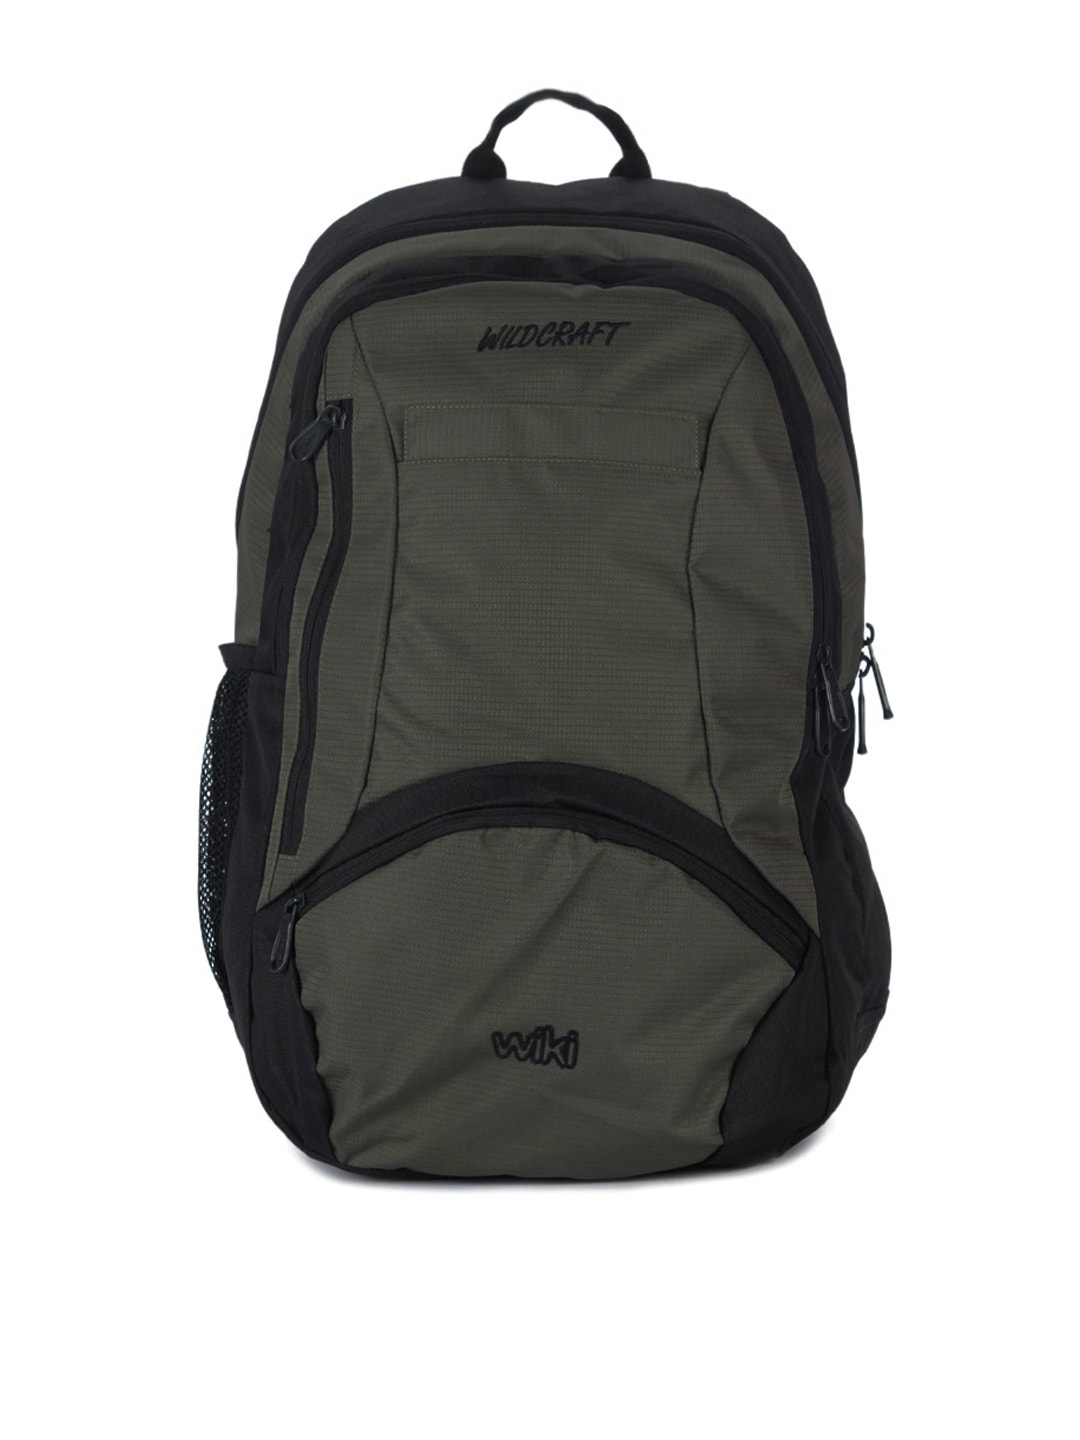 Wildcraft Unisex Olive Green & Black Backpack